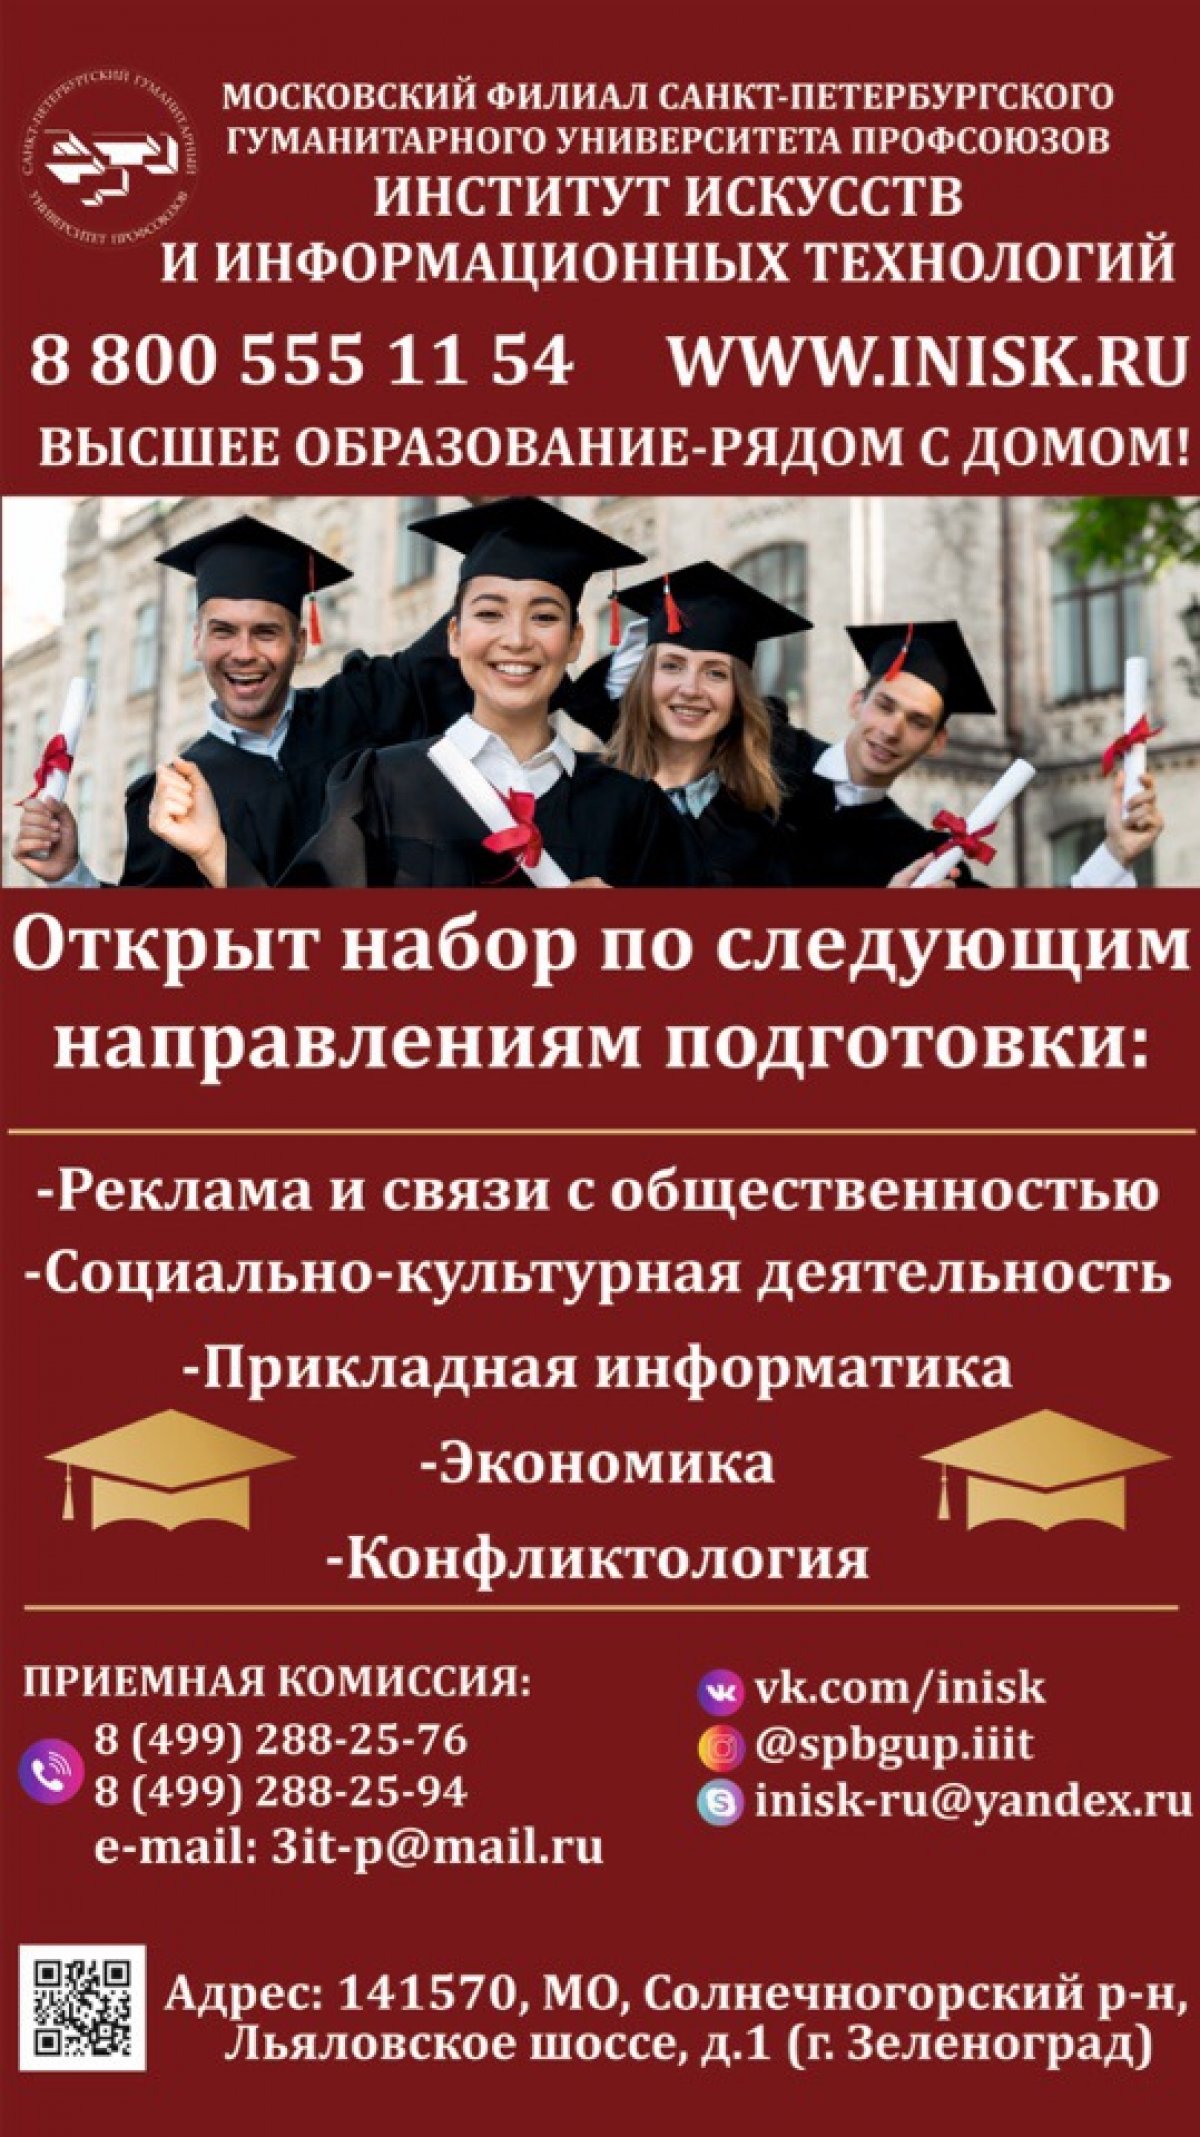 Друзья! Ждём всех желающий получить качественное и престижное образование в двух культурных столицах России!